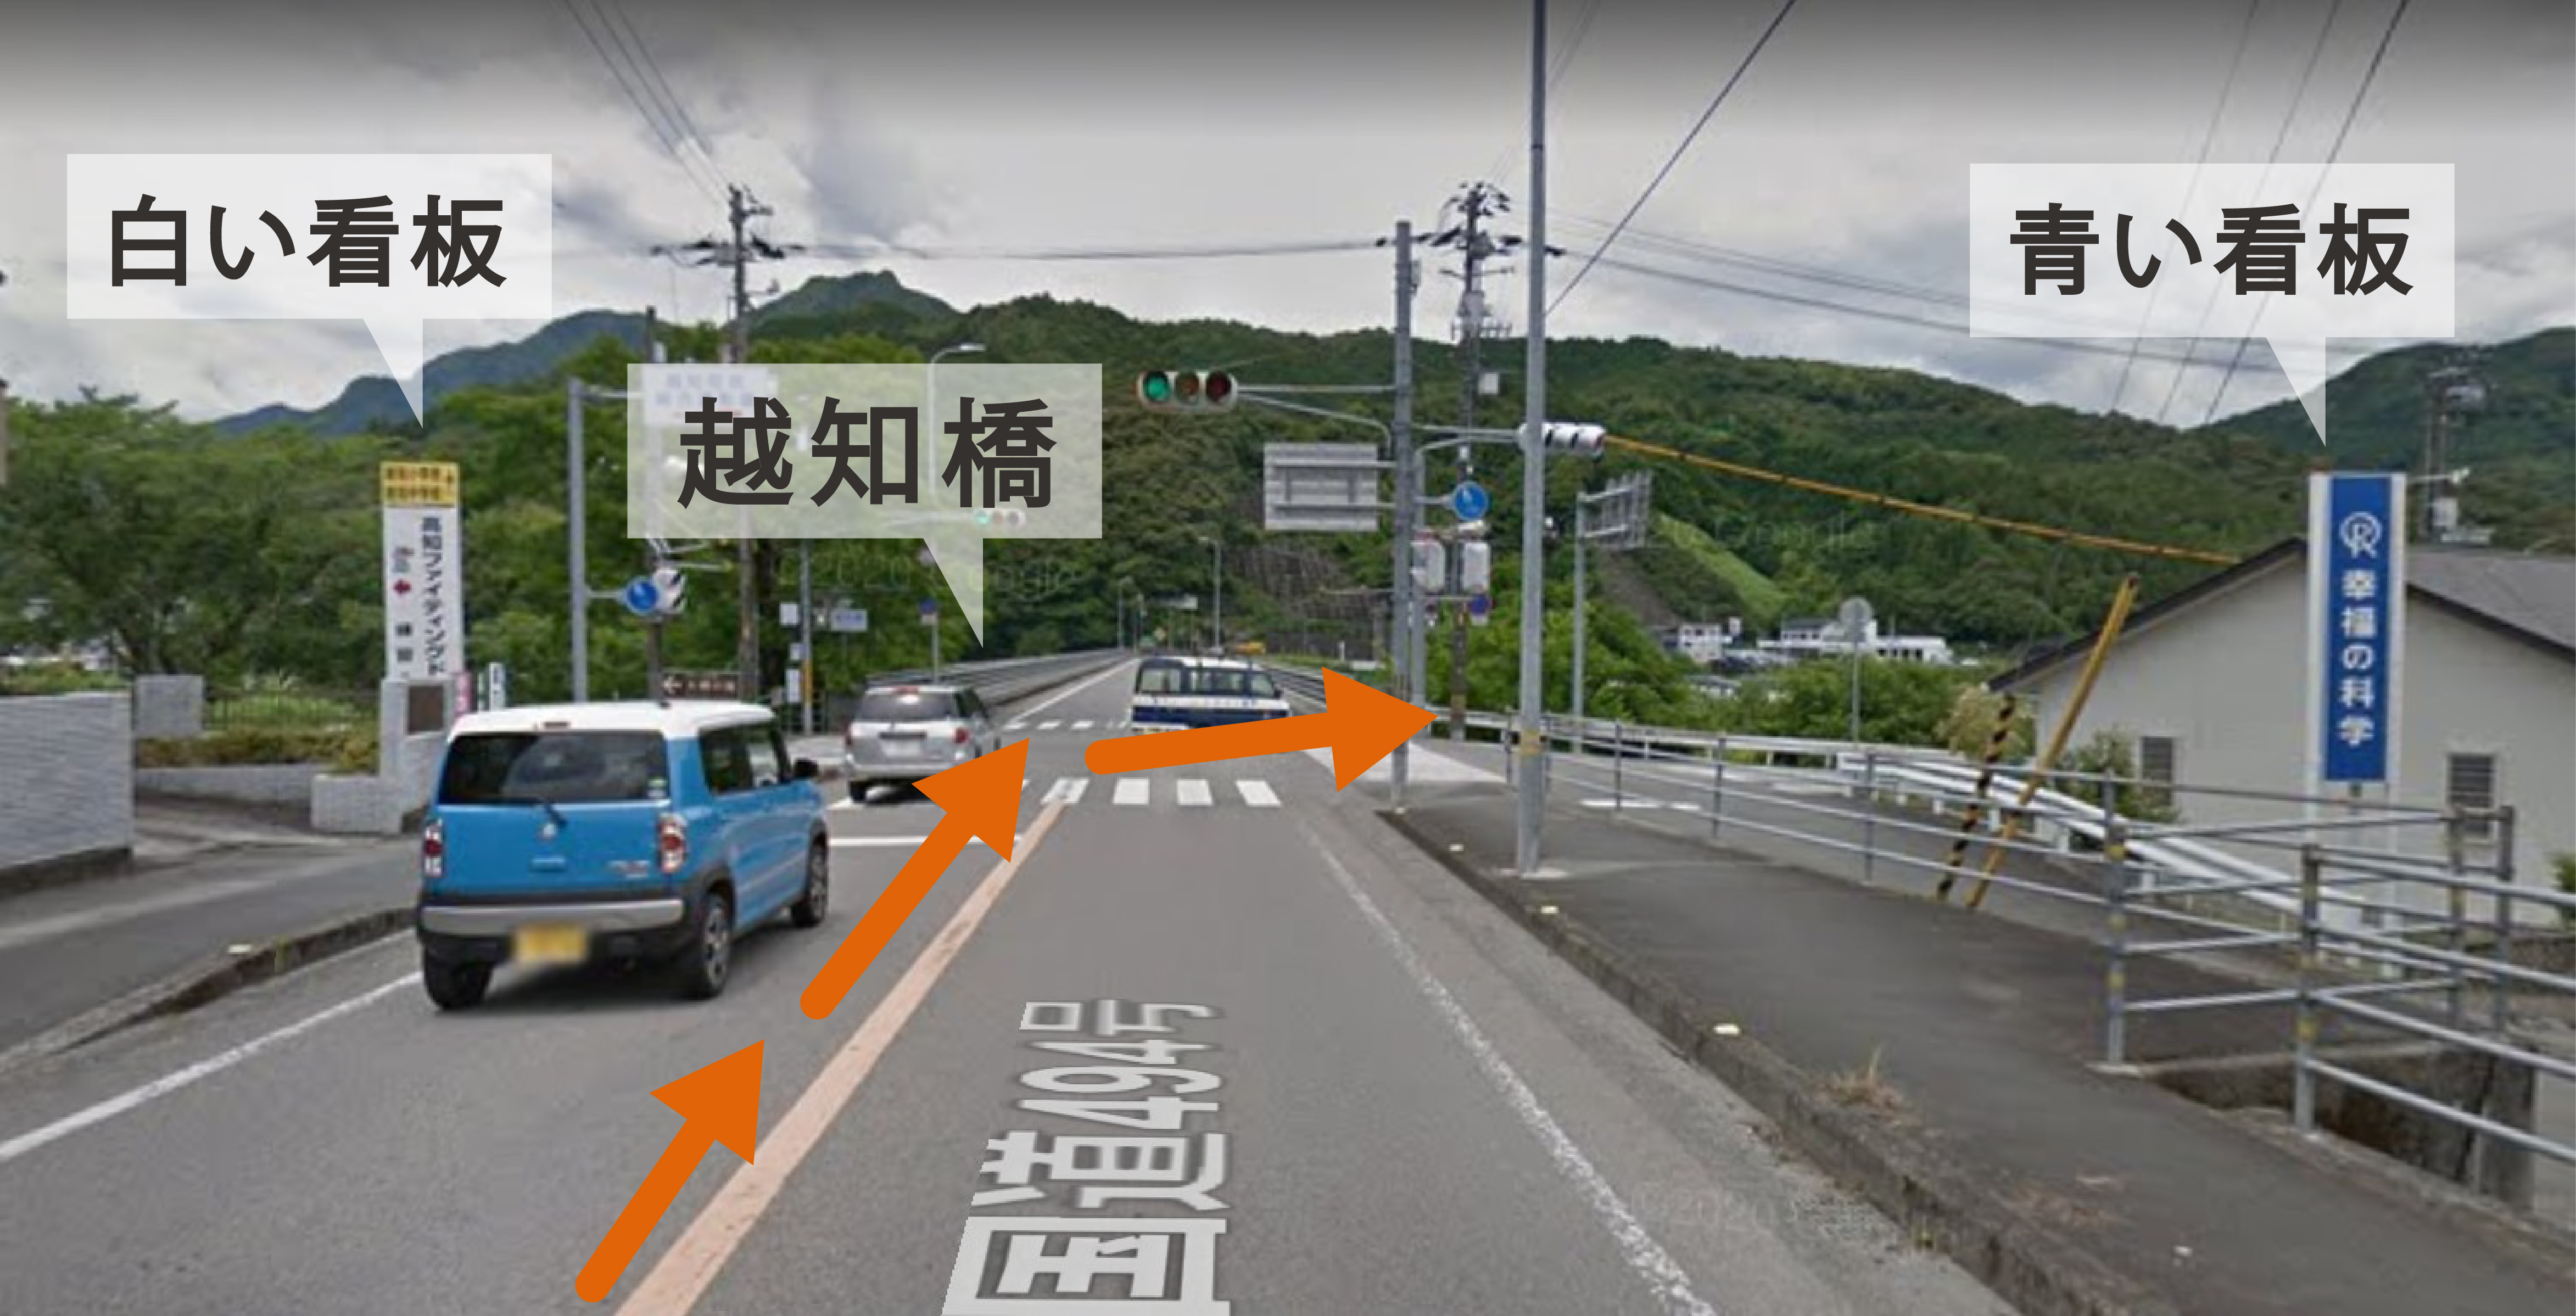 越知橋の手前の交差点を右折。右手に青い看板と、左手にある白い看板と右手にある青い看板が目印です。